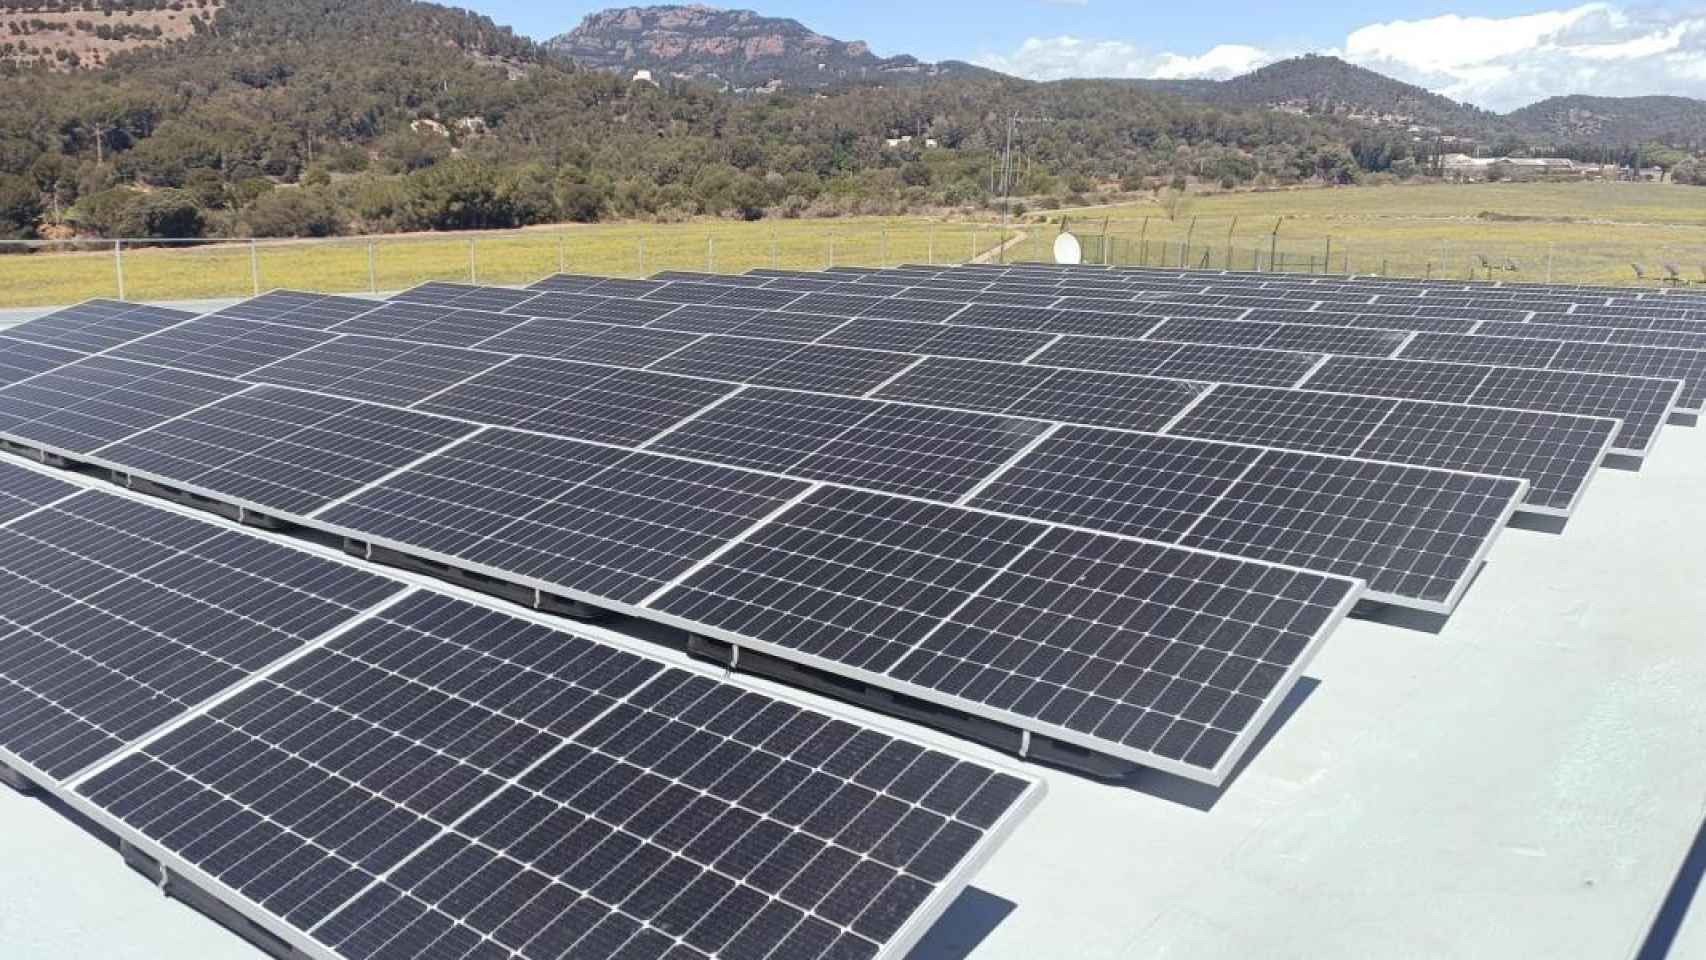 Imagen de placas solares de GSolar, la empresa de Joan Ramon Gros